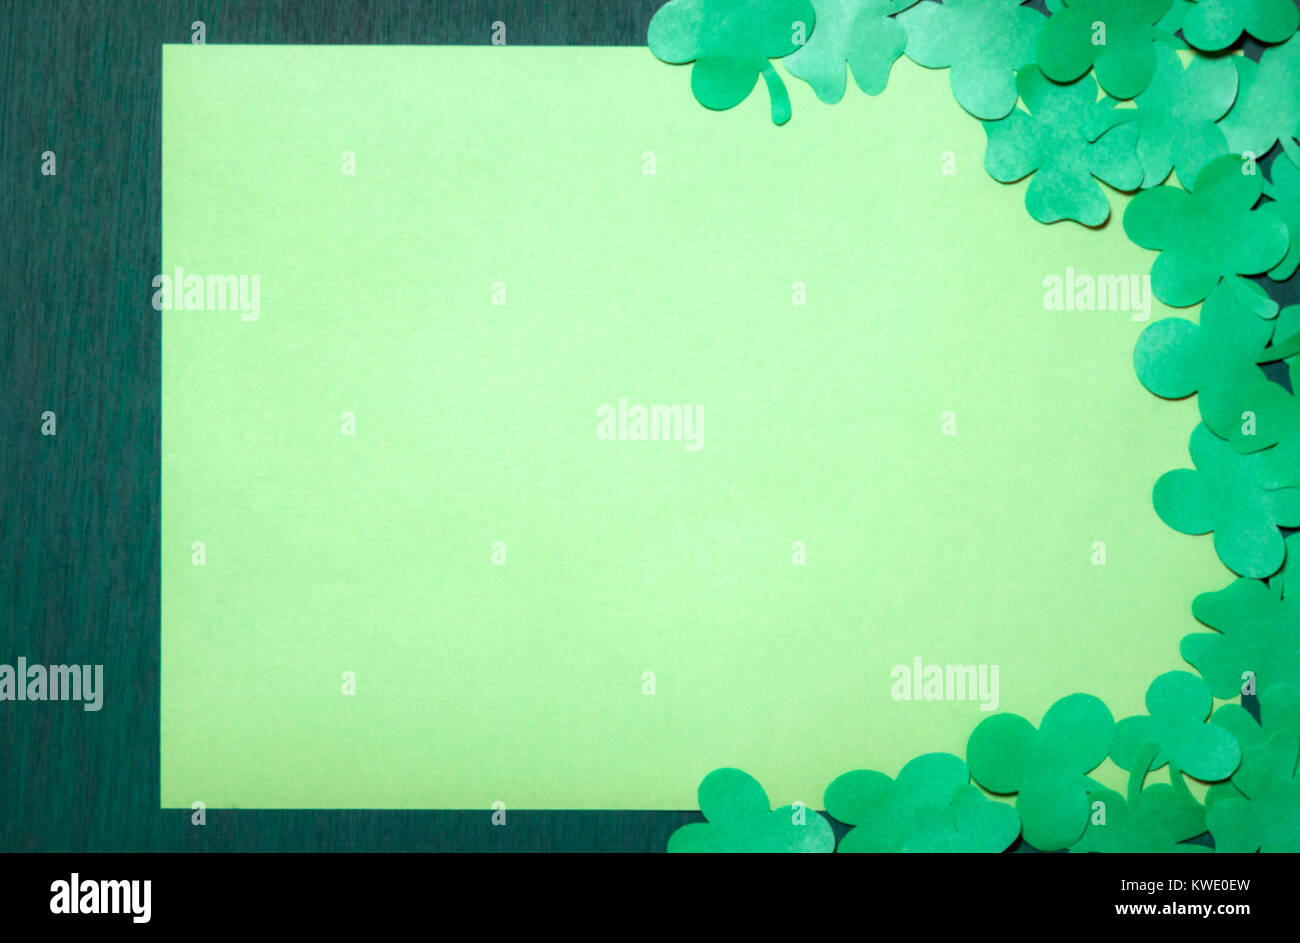 Saint Patrick greeting card design con un sacco di carta trifogli che circonda un giallo vuota del foglio di carta visualizzato su un verde scuro dello sfondo di legno. Foto Stock